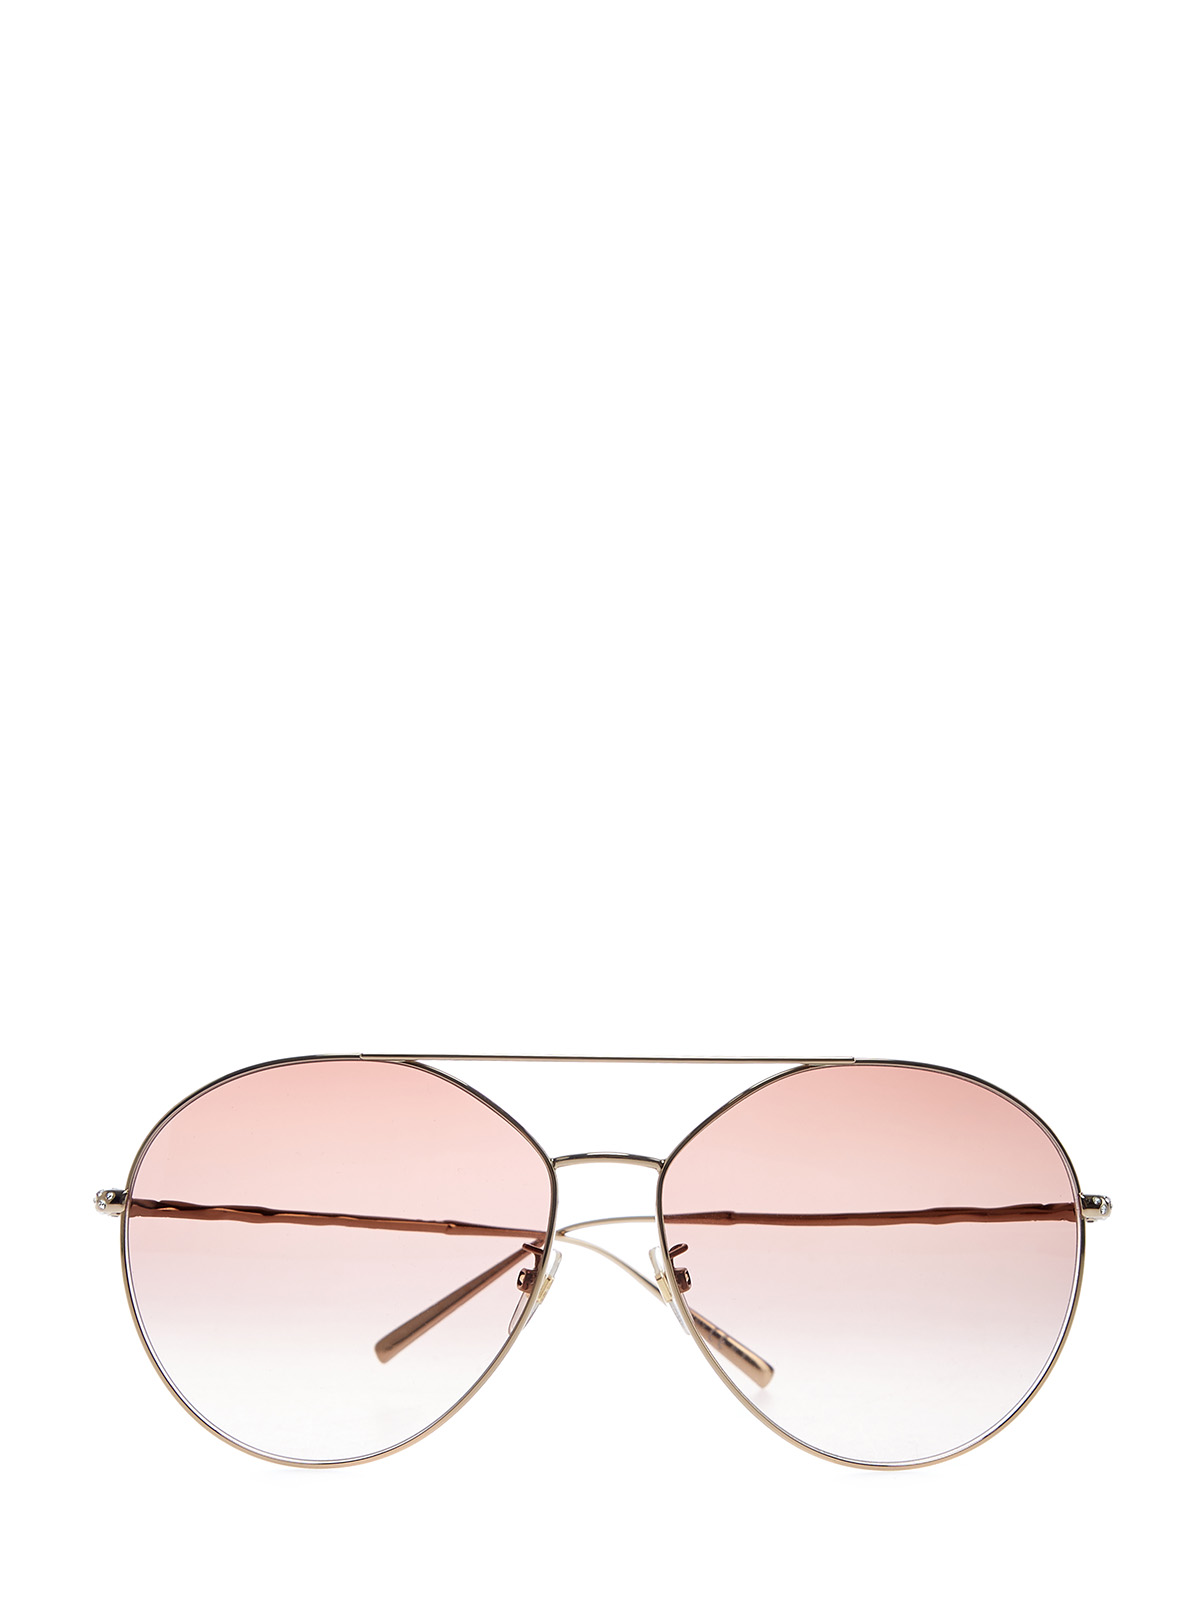 Очки-авиаторы с тонким двойным мостом и кристаллами Swarovski GIVENCHY (sunglasses), цвет коричневый